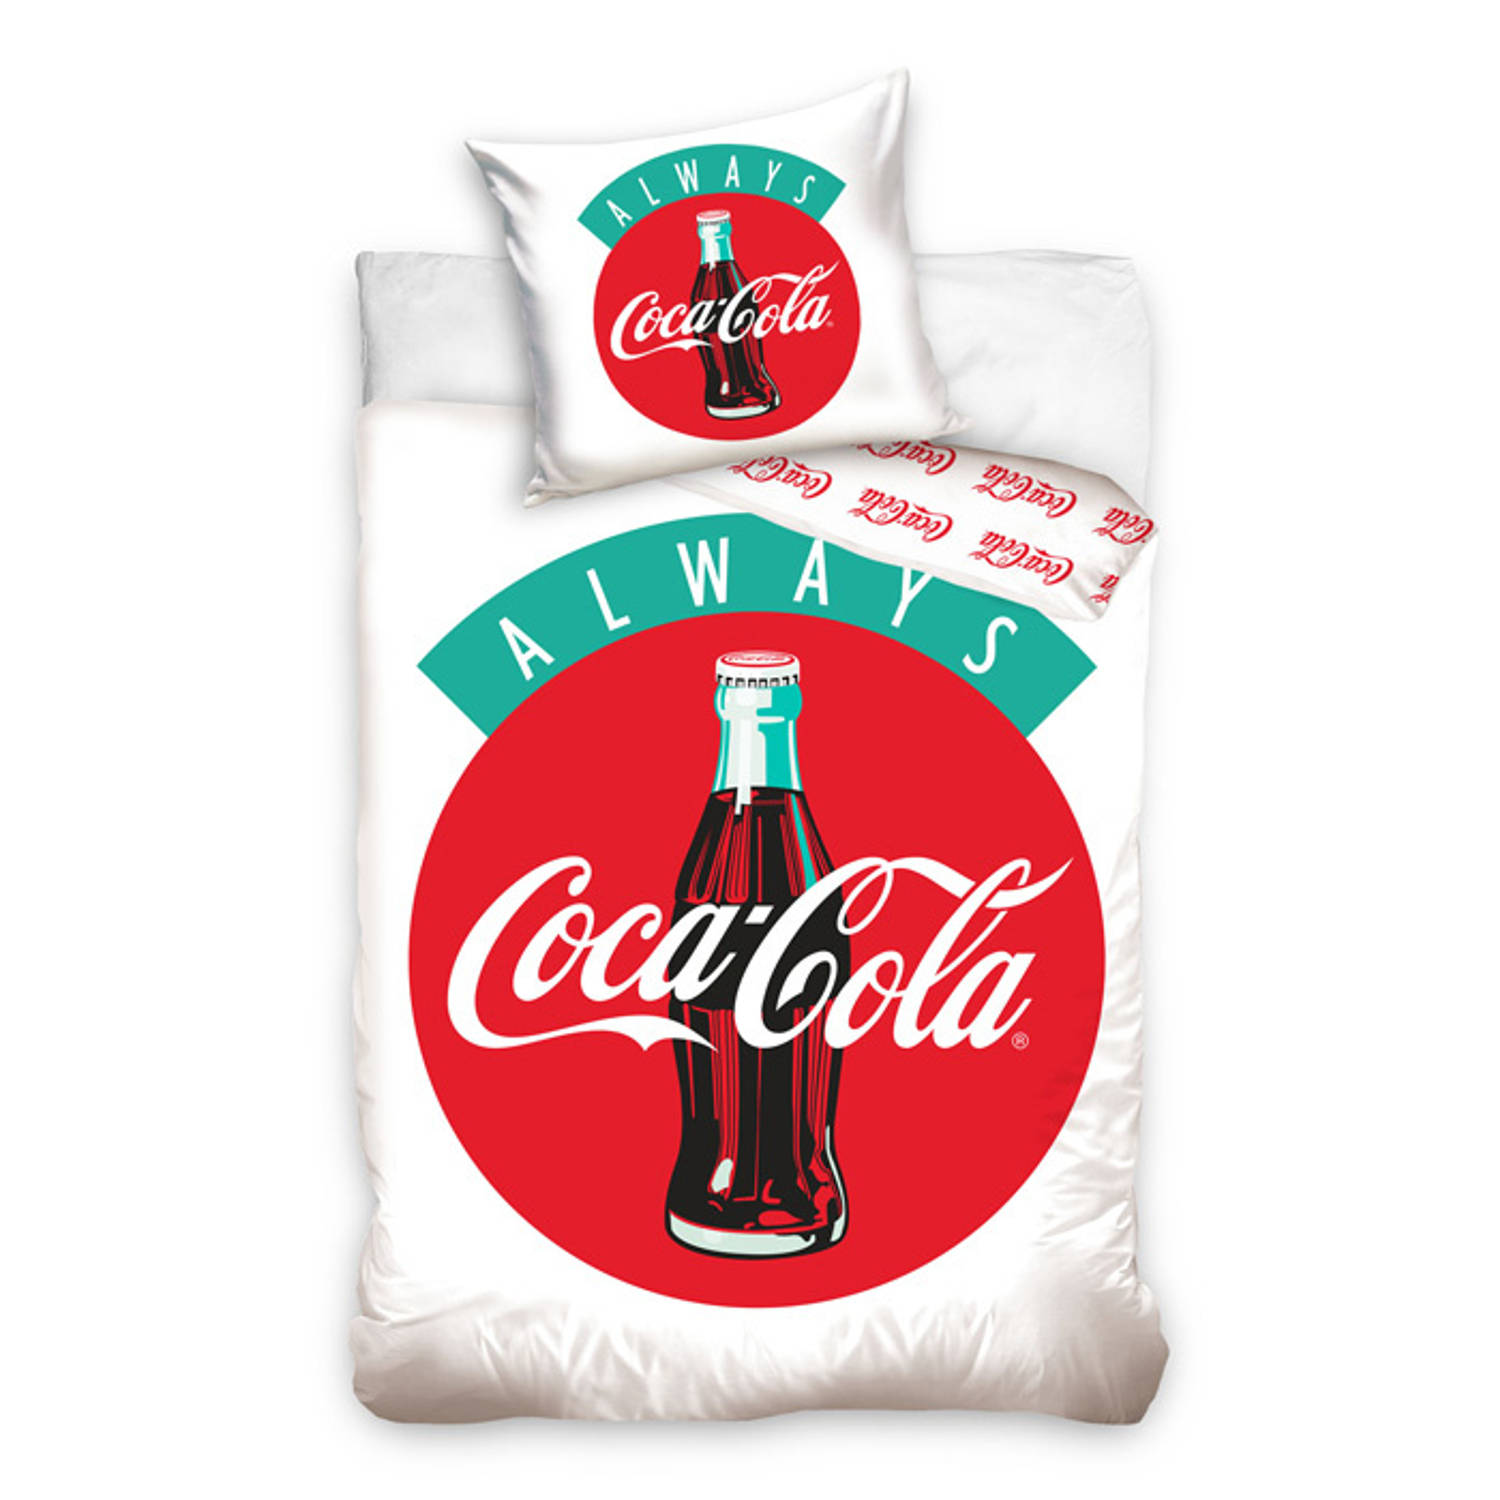 Coca Cola Dekbedovertrek Always - Multi - 1-persoons 140x200 Cm